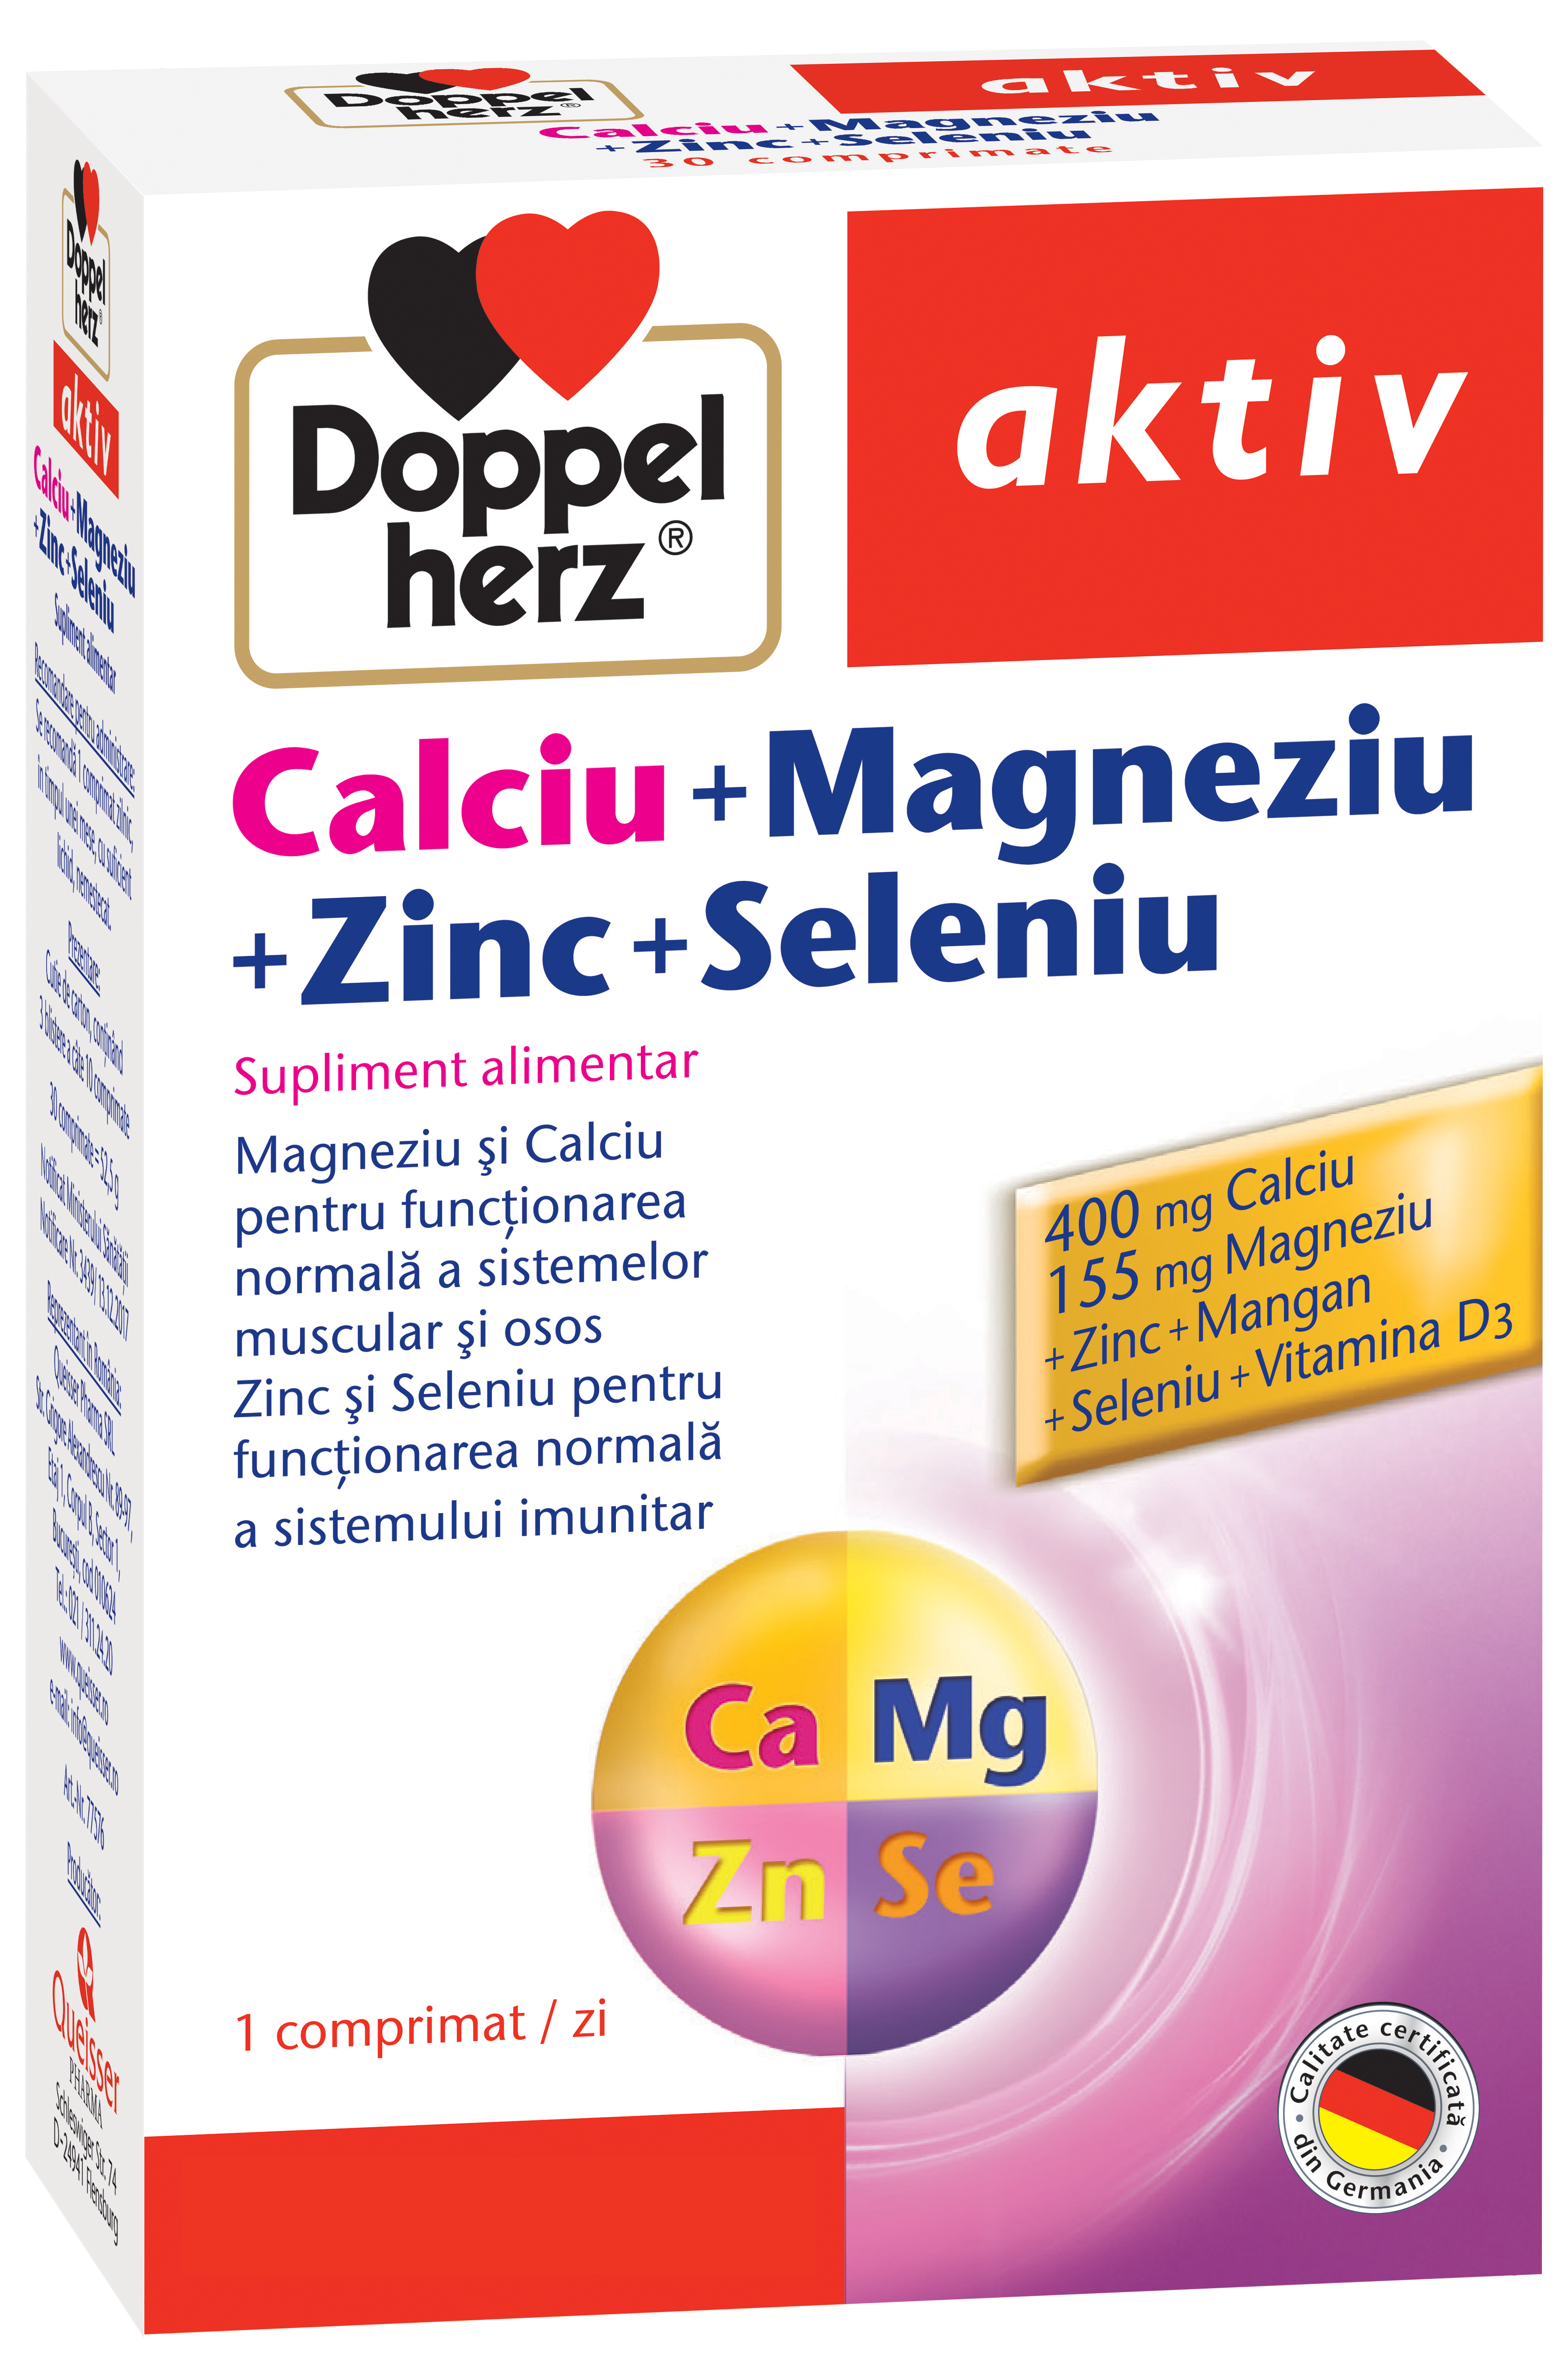 Uz general - Doppelherz Aktiv Calciu + Magneziu + Zinc + Seleniu, 30 comprimate, sinapis.ro